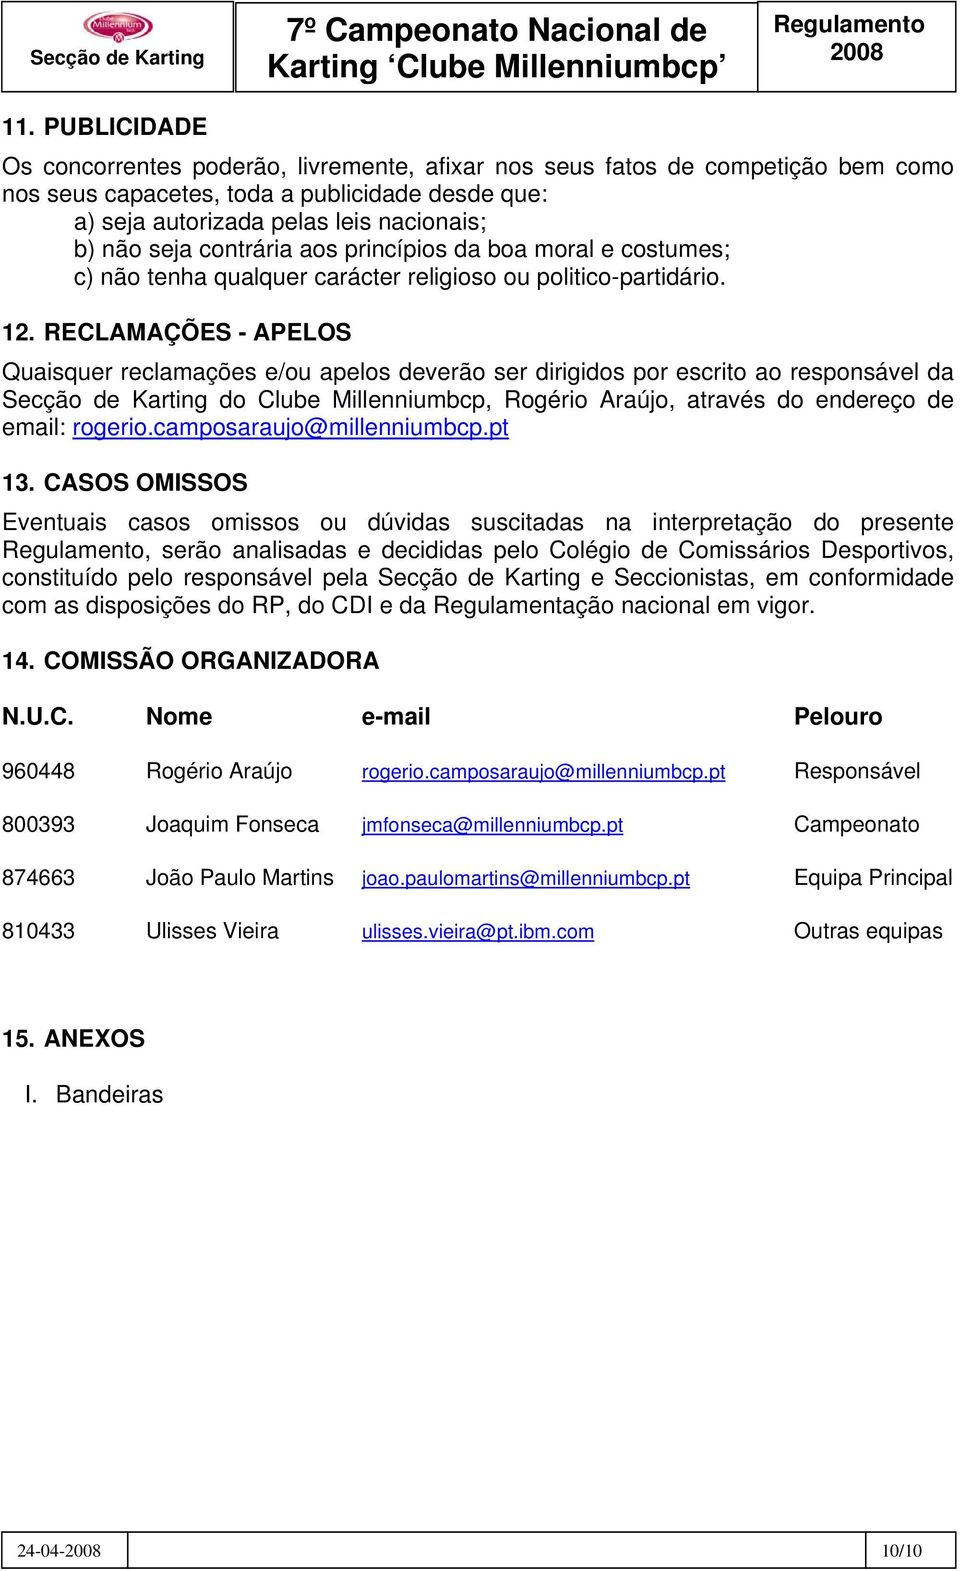 RECLAMAÇÕES - APELOS Quaisquer reclamações e/ou apelos deverão ser dirigidos por escrito ao responsável da Secção de Karting do Clube Millenniumbcp, Rogério Araújo, através do endereço de email: